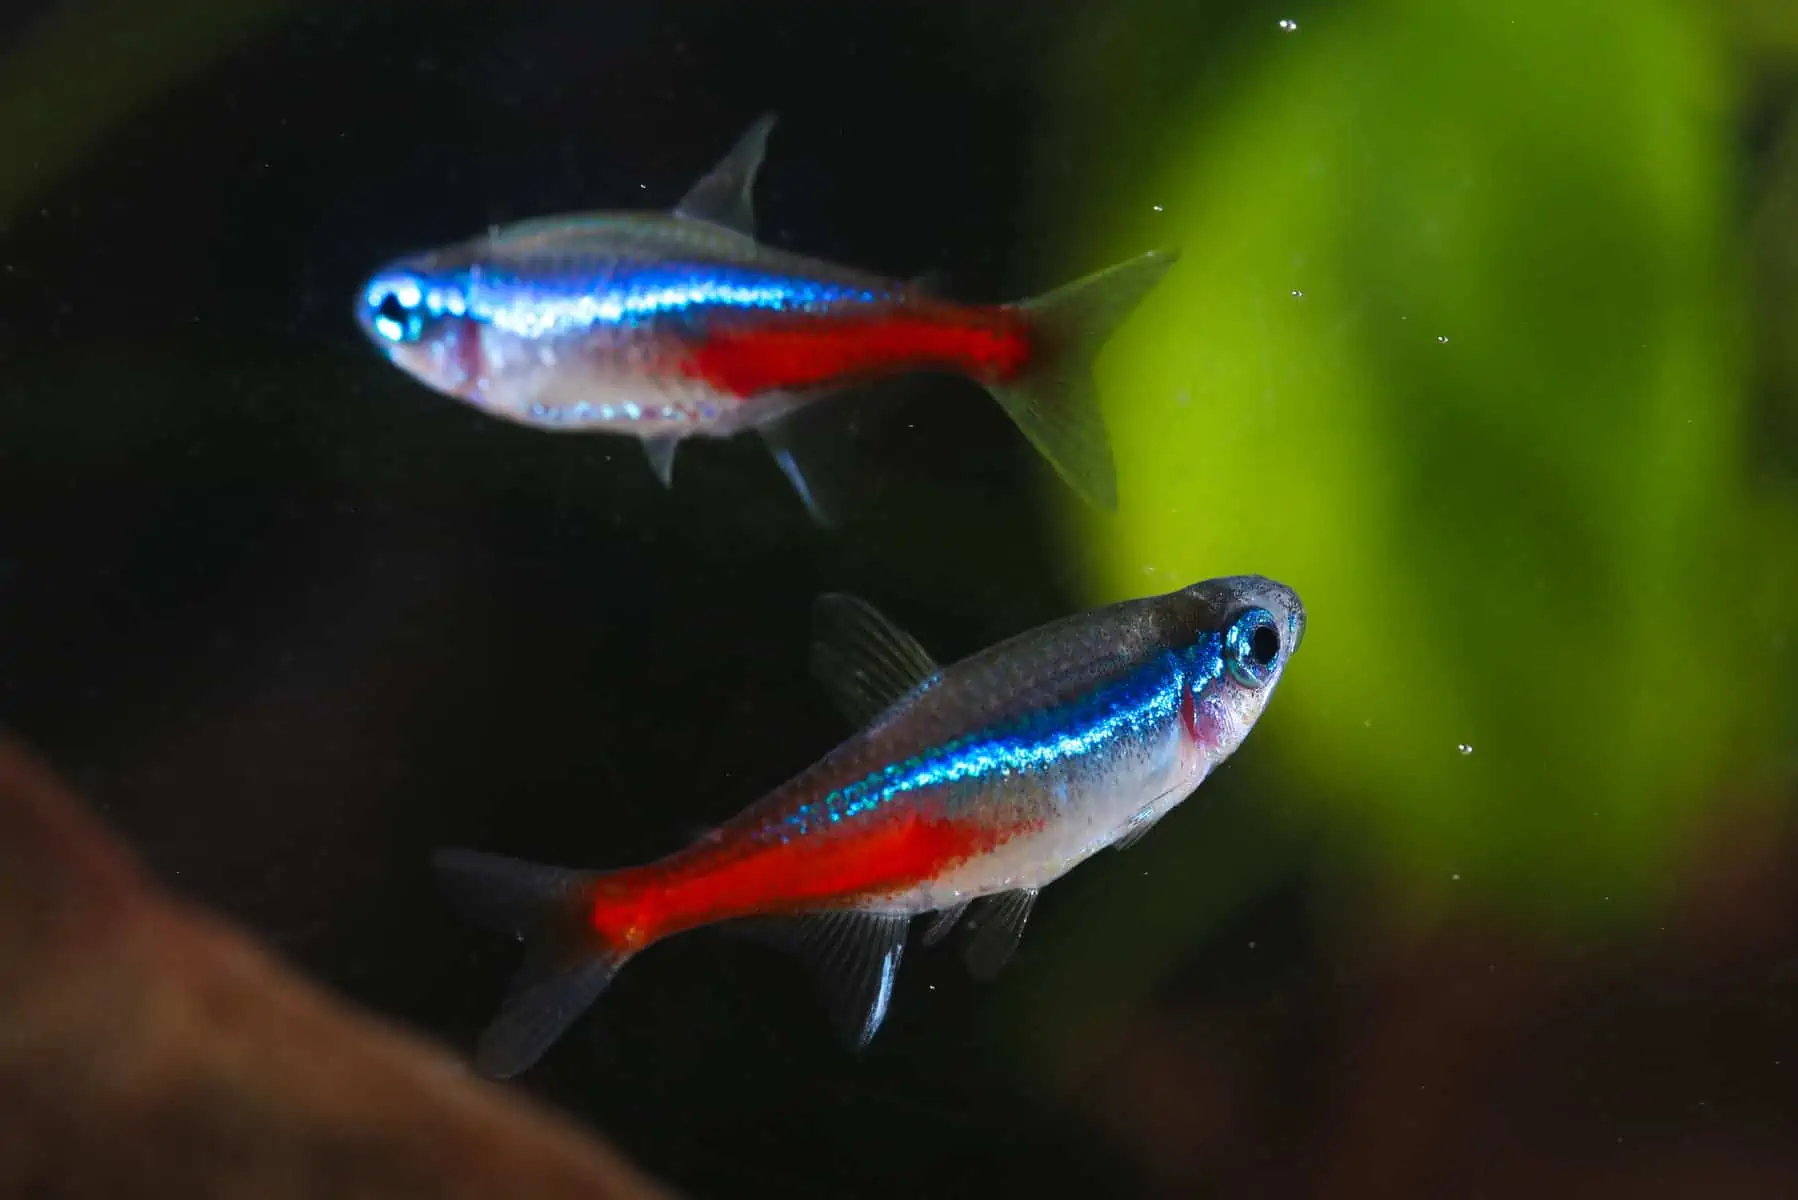 Two Neon tetra Paracheirodon innesi freshwater aquarium fish